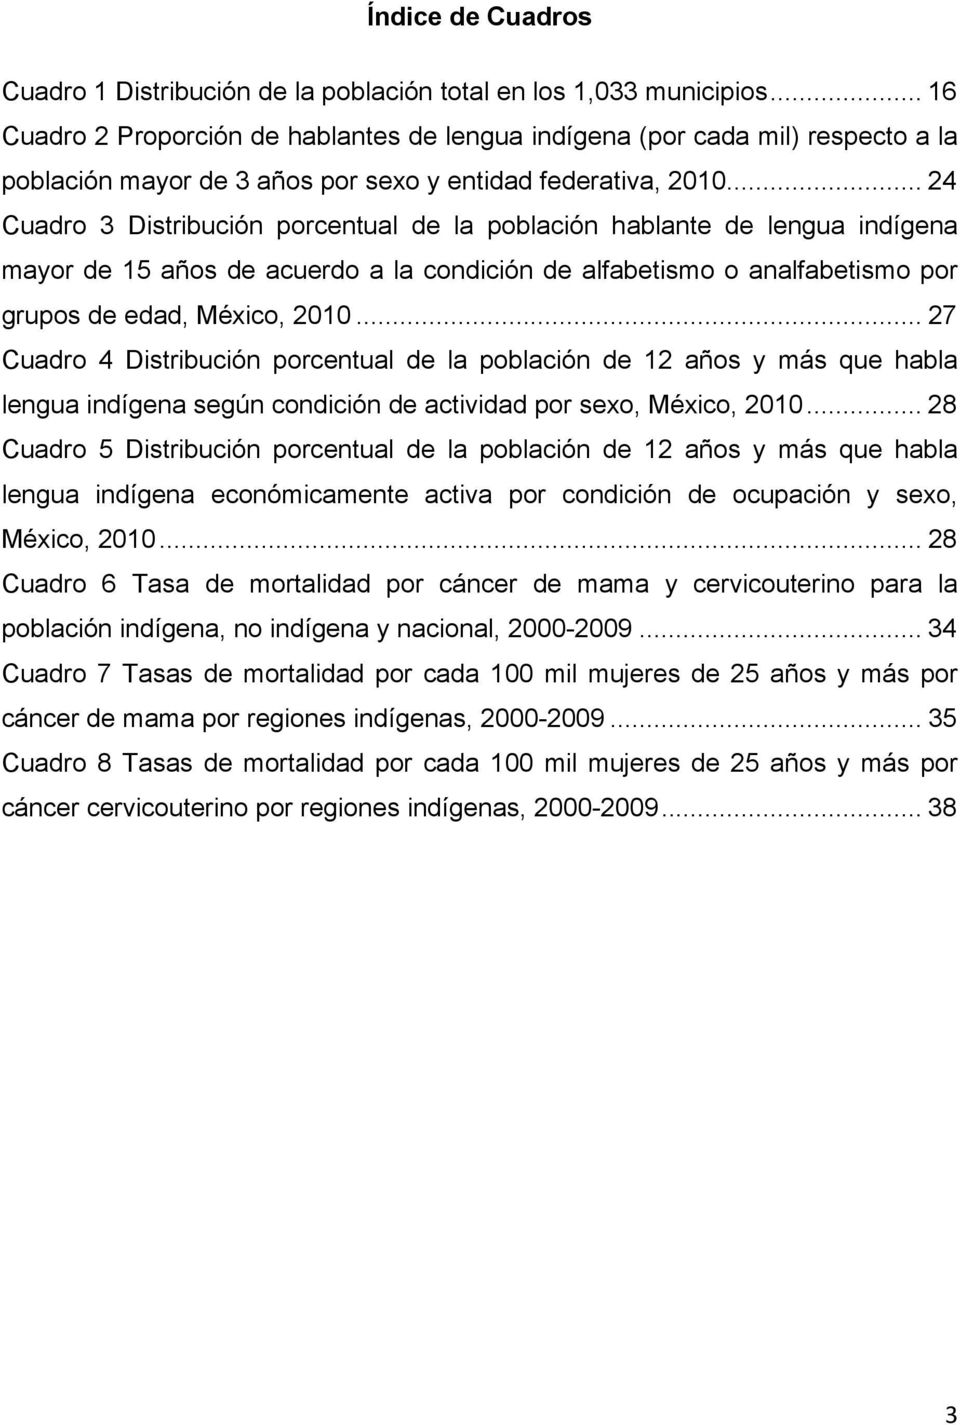 .. 24 Cuadro 3 Distribución porcentual de la población hablante de lengua indígena mayor de 15 años de acuerdo a la condición de alfabetismo o analfabetismo por grupos de edad, México, 2010.